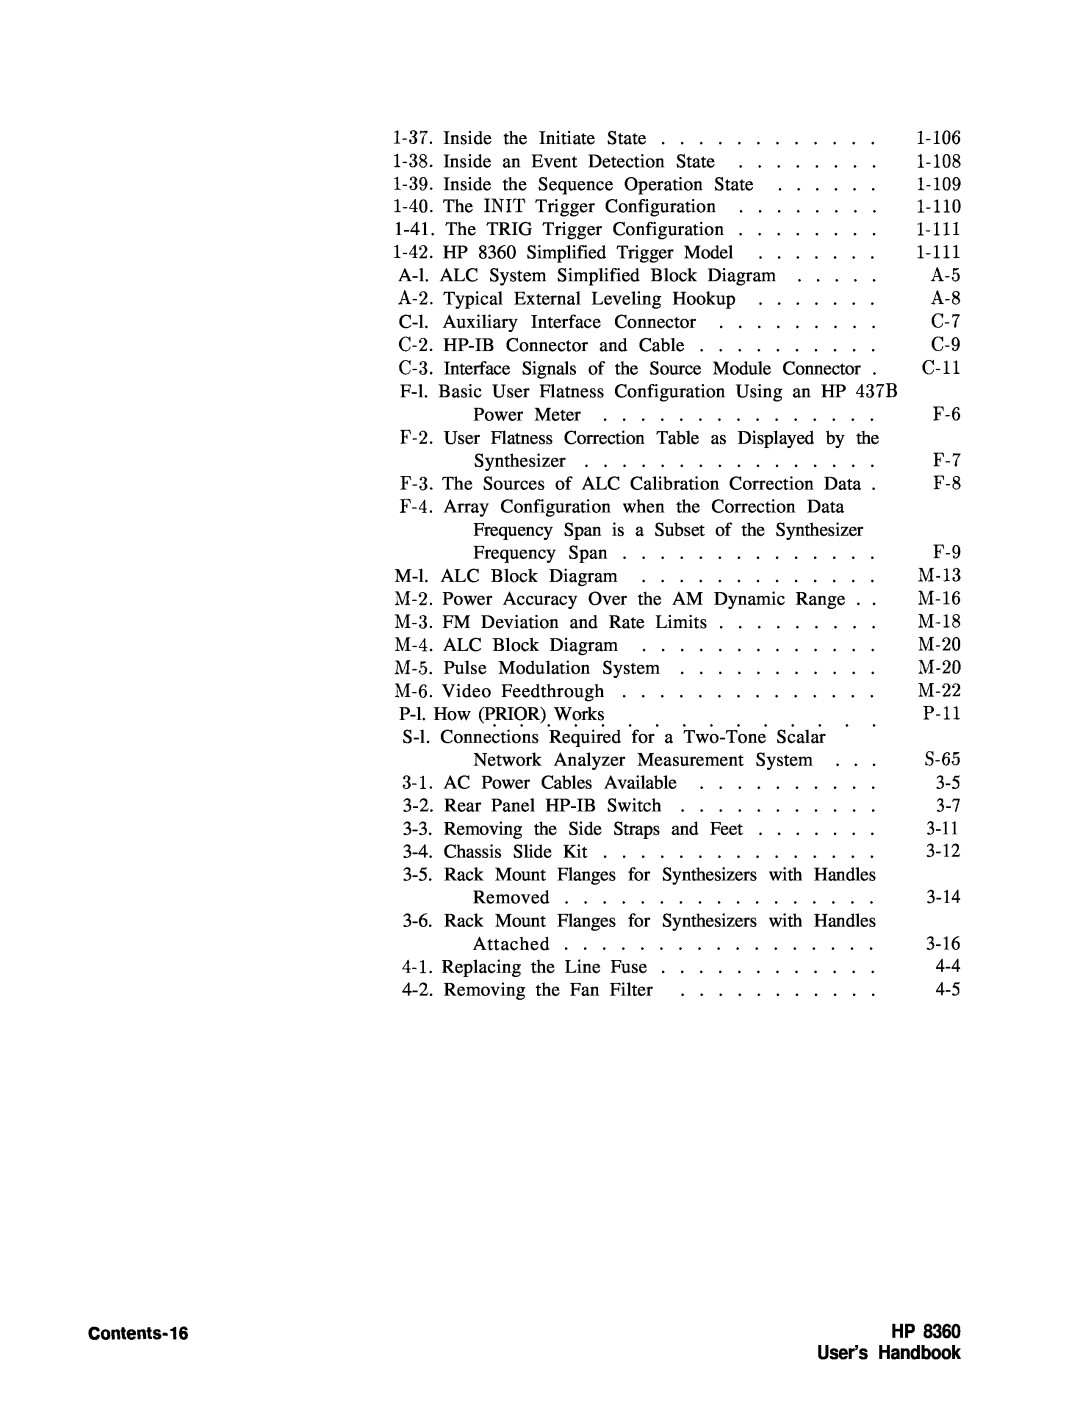 HP 22A, 83620A, 24A manual Contents-16, User’s Handbook 